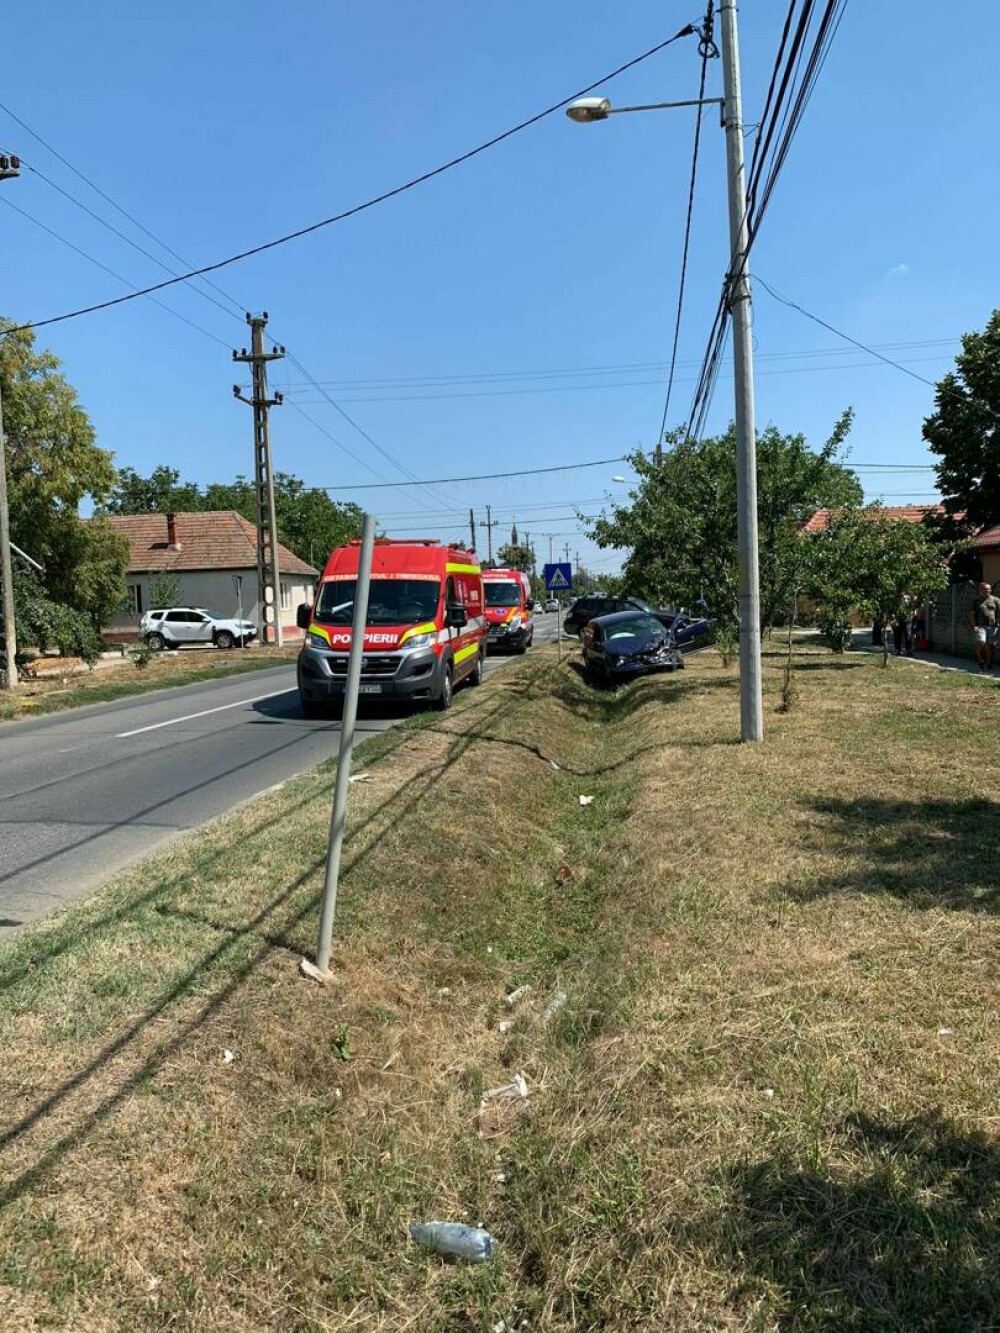 VIDEO Accident între două mașini, lângă Timișoara. Ambii șoferi erau băuți | GALERIE FOTO - Imaginea 3